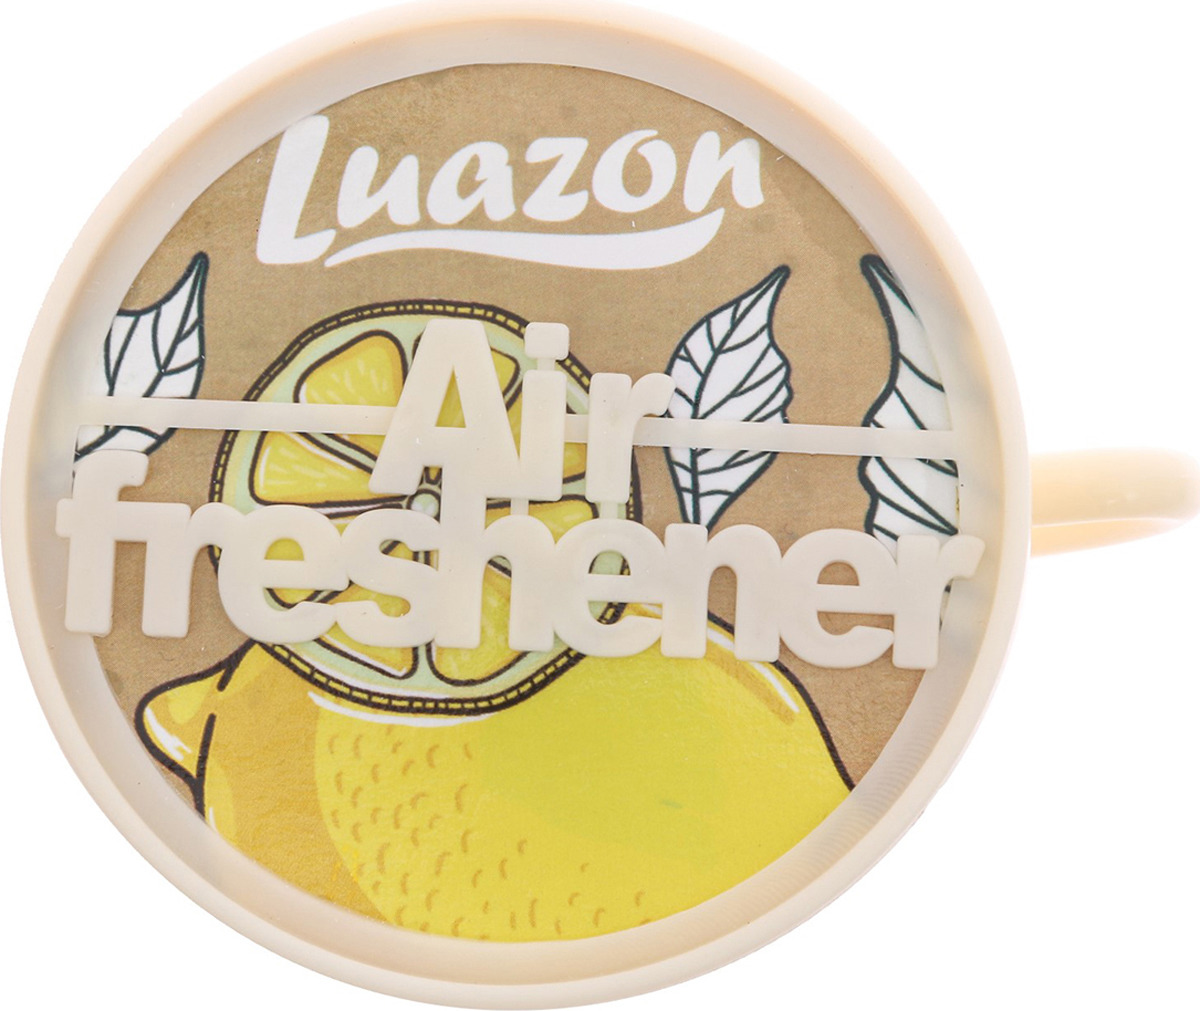 фото Ароматизатор автомобильный Luazon Tea Cup Лимон, 2822239